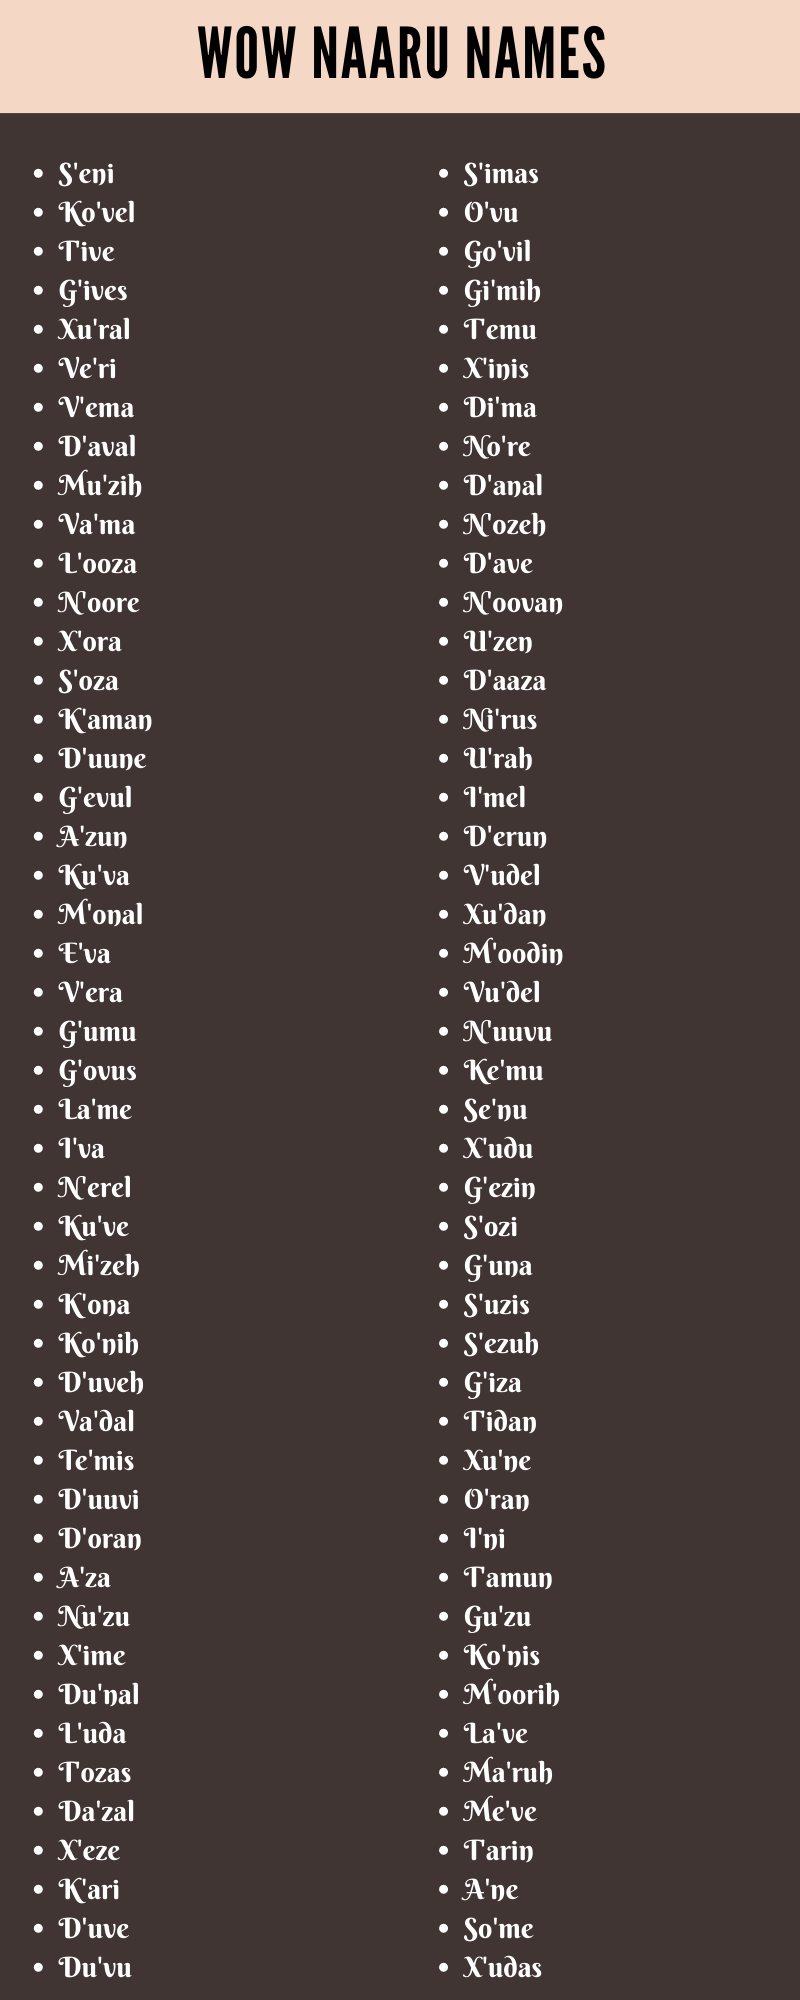 Wow Naaru Names